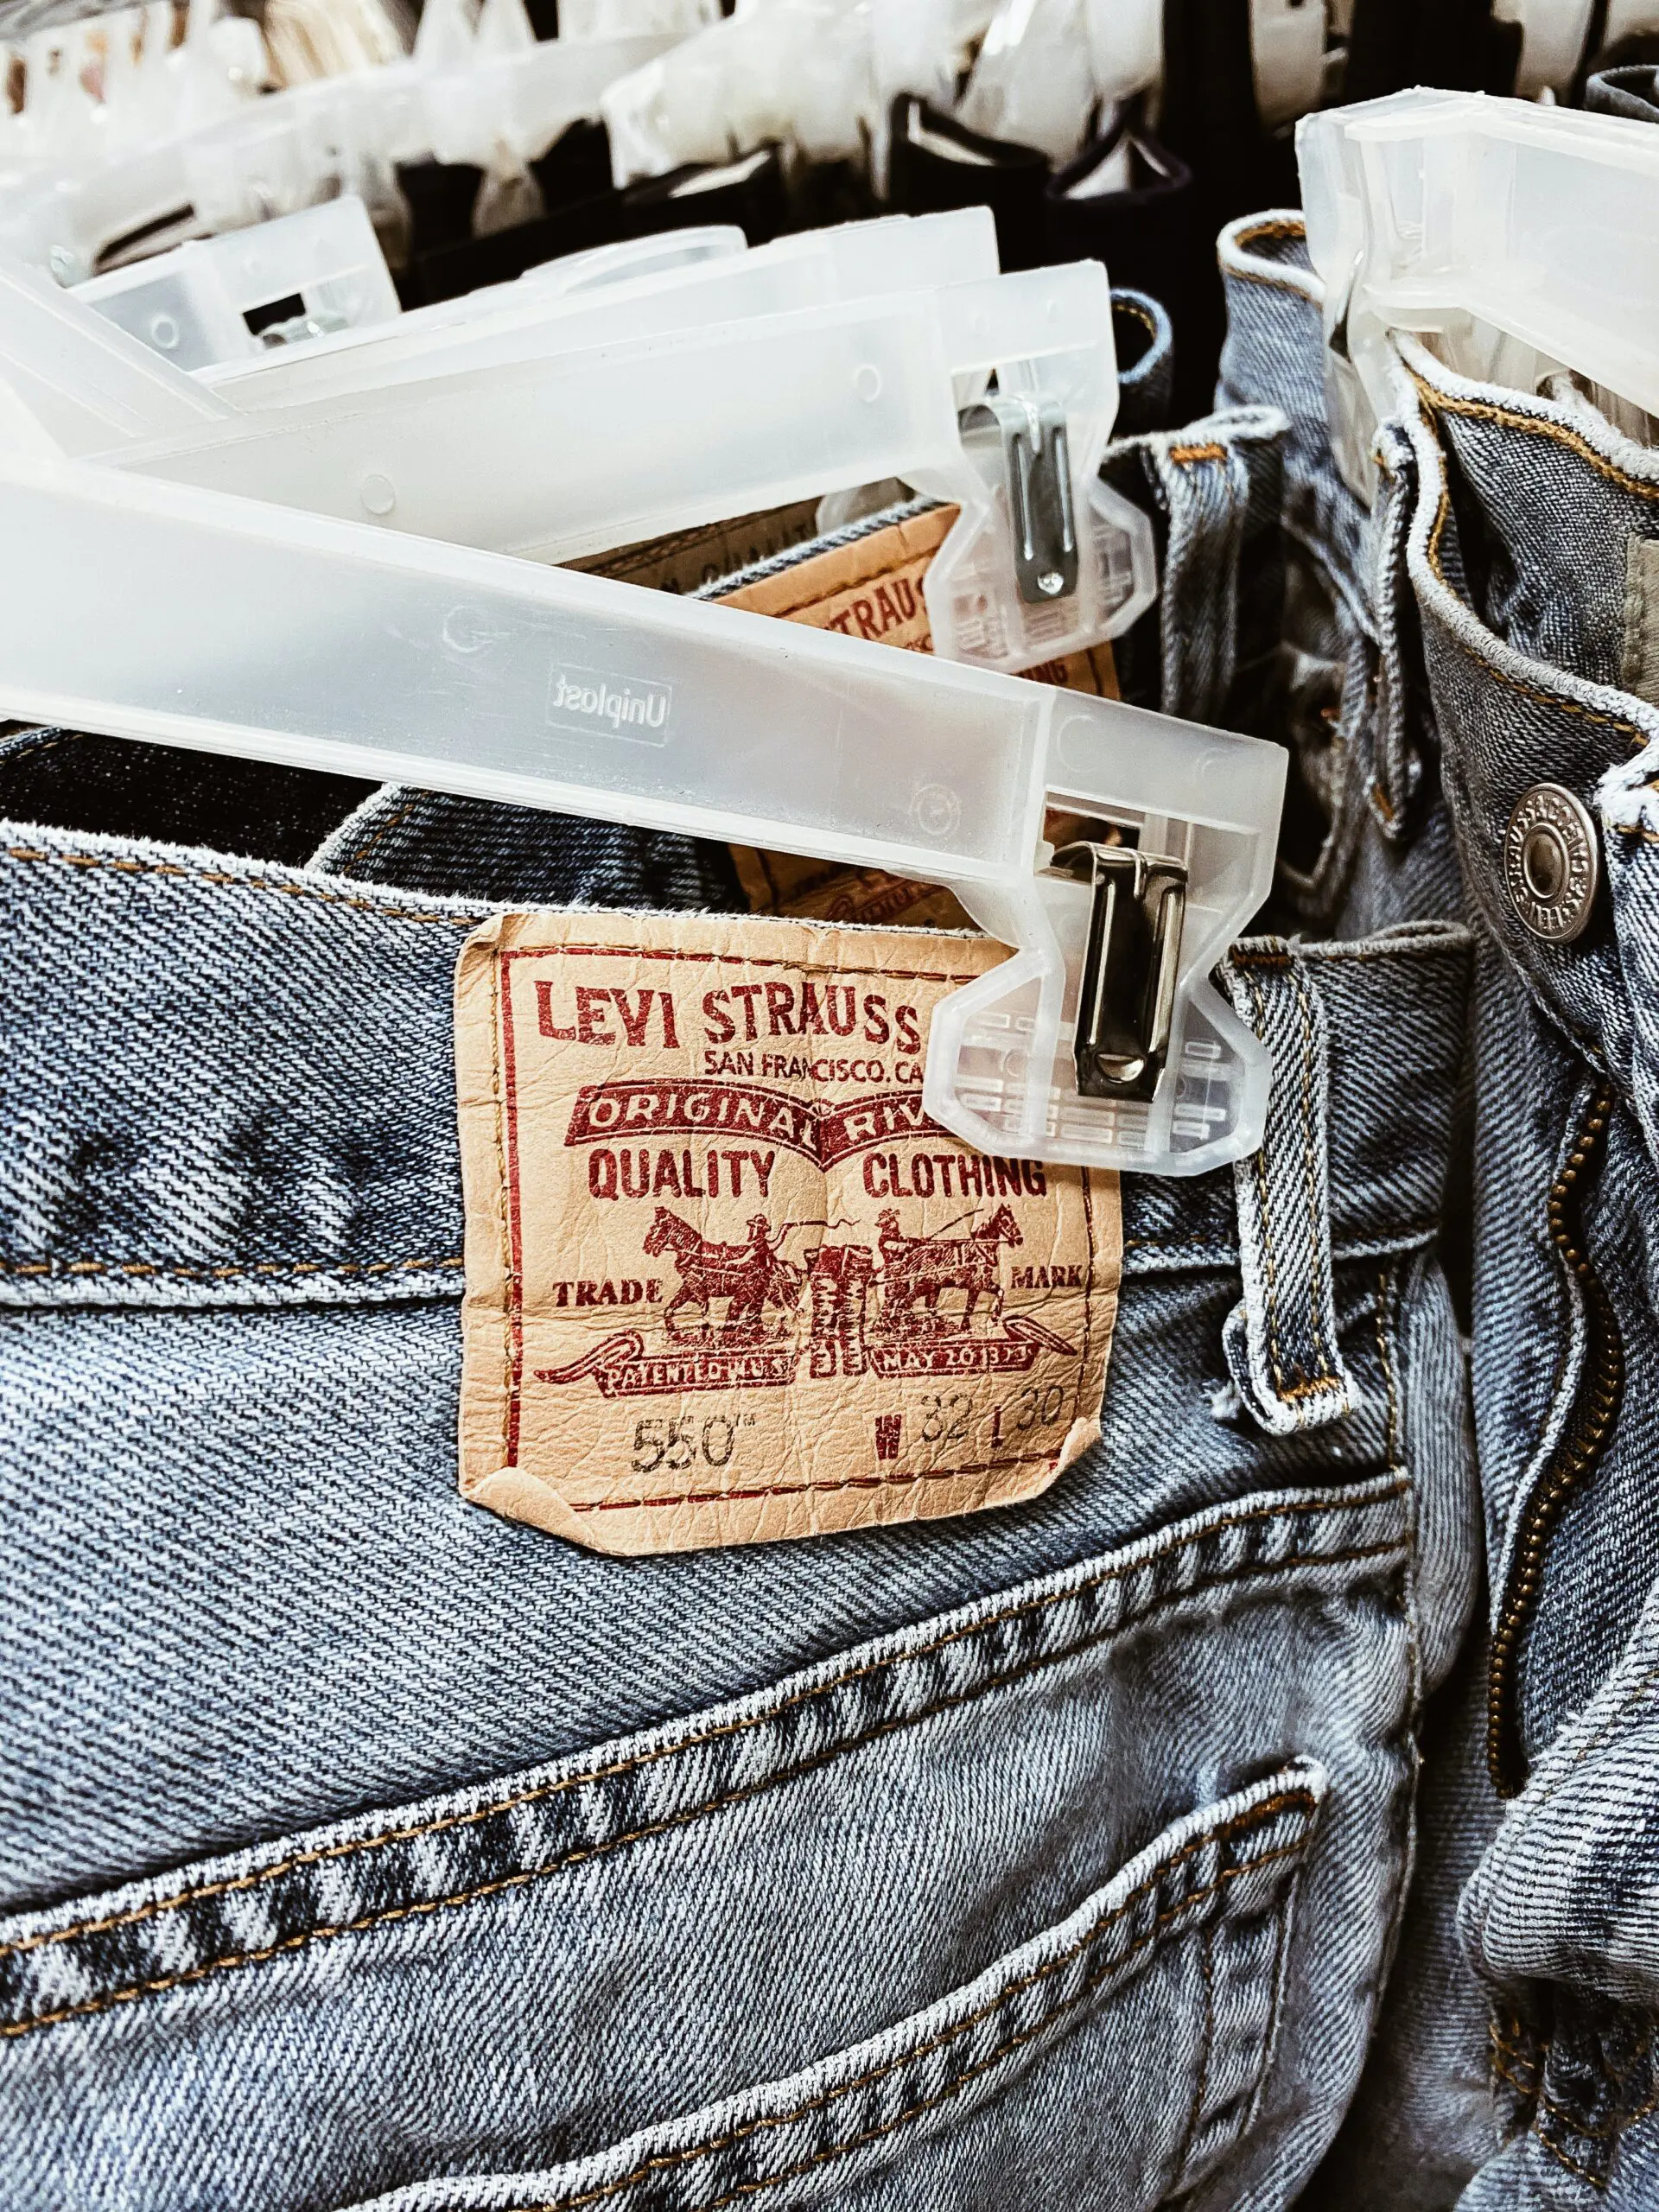 La historia de Levi Strauss, el hombre que se hizo millonario vendiendo jeans